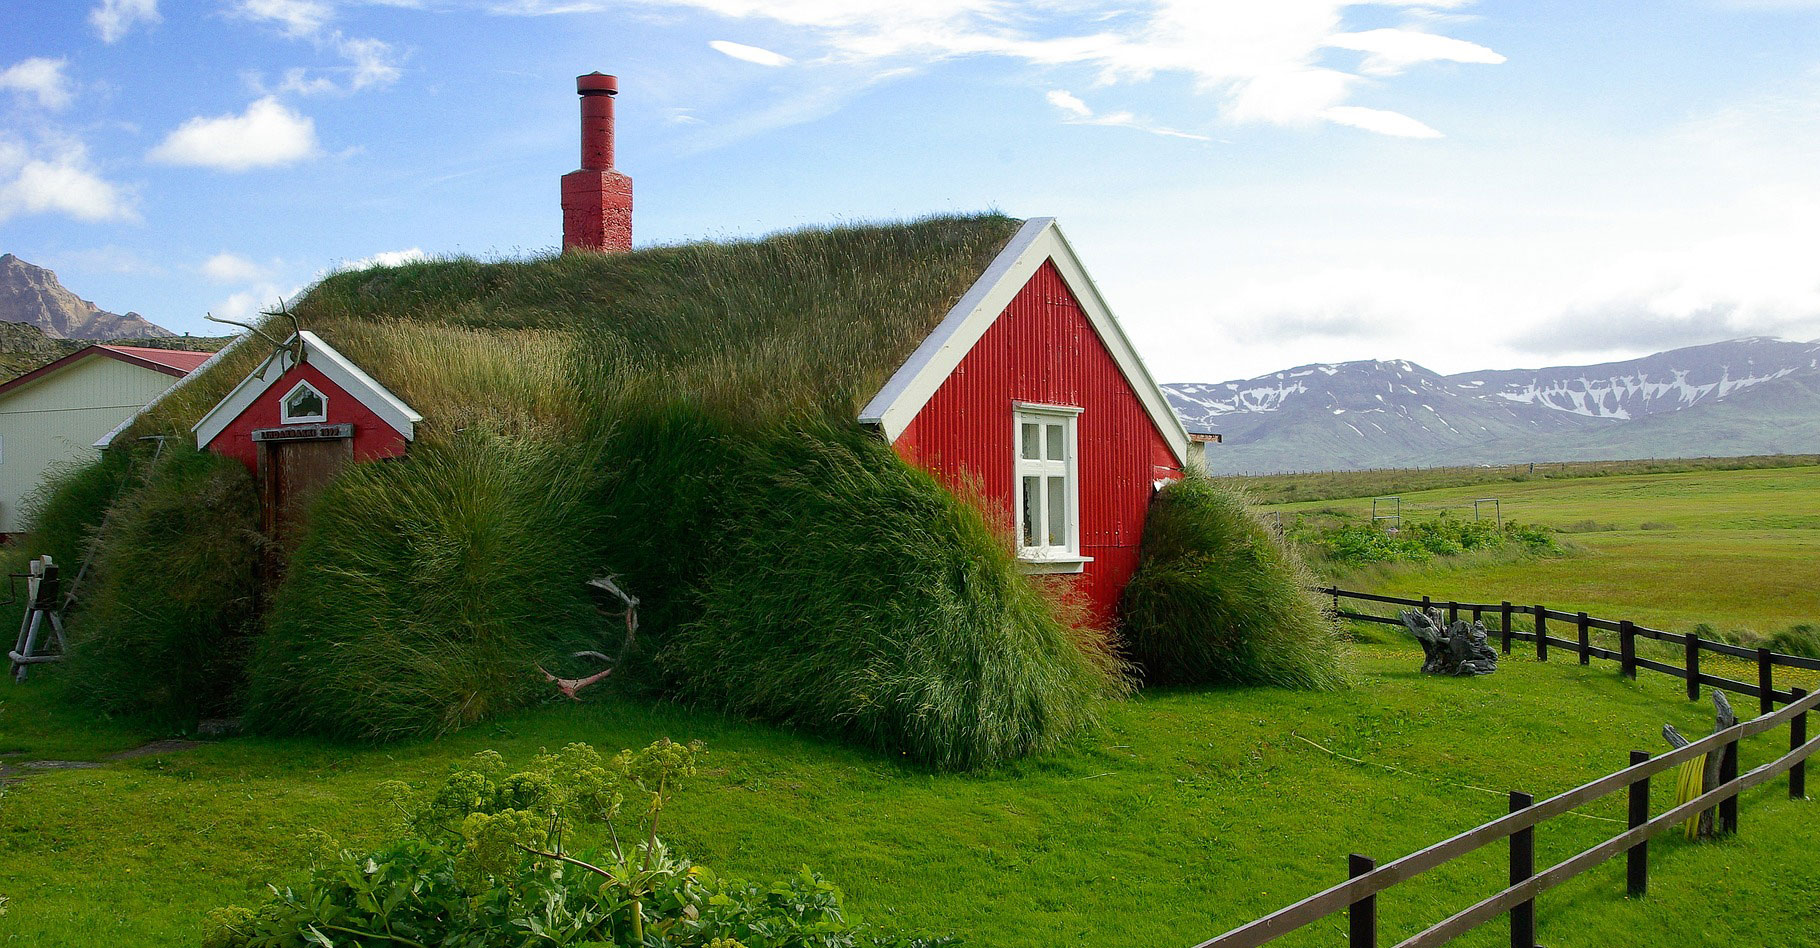 Toiture végétalisée d'une maison en Islande.&nbsp;© Jackmac34, Pixabay, DP